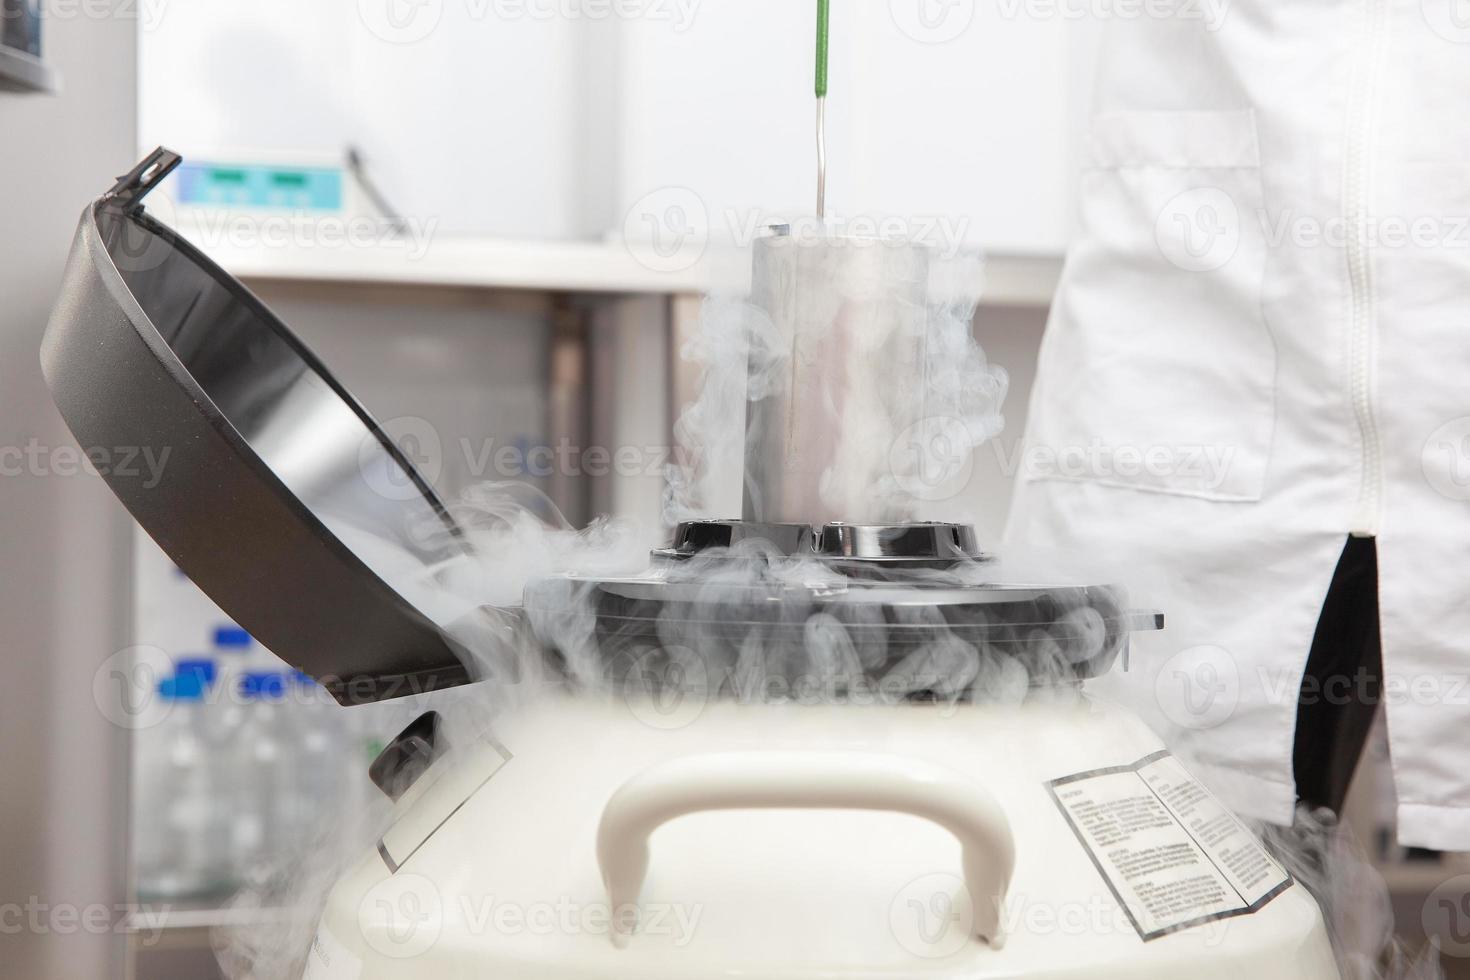 réservoir cryogénique d'azote liquide au laboratoire des sciences de la vie photo